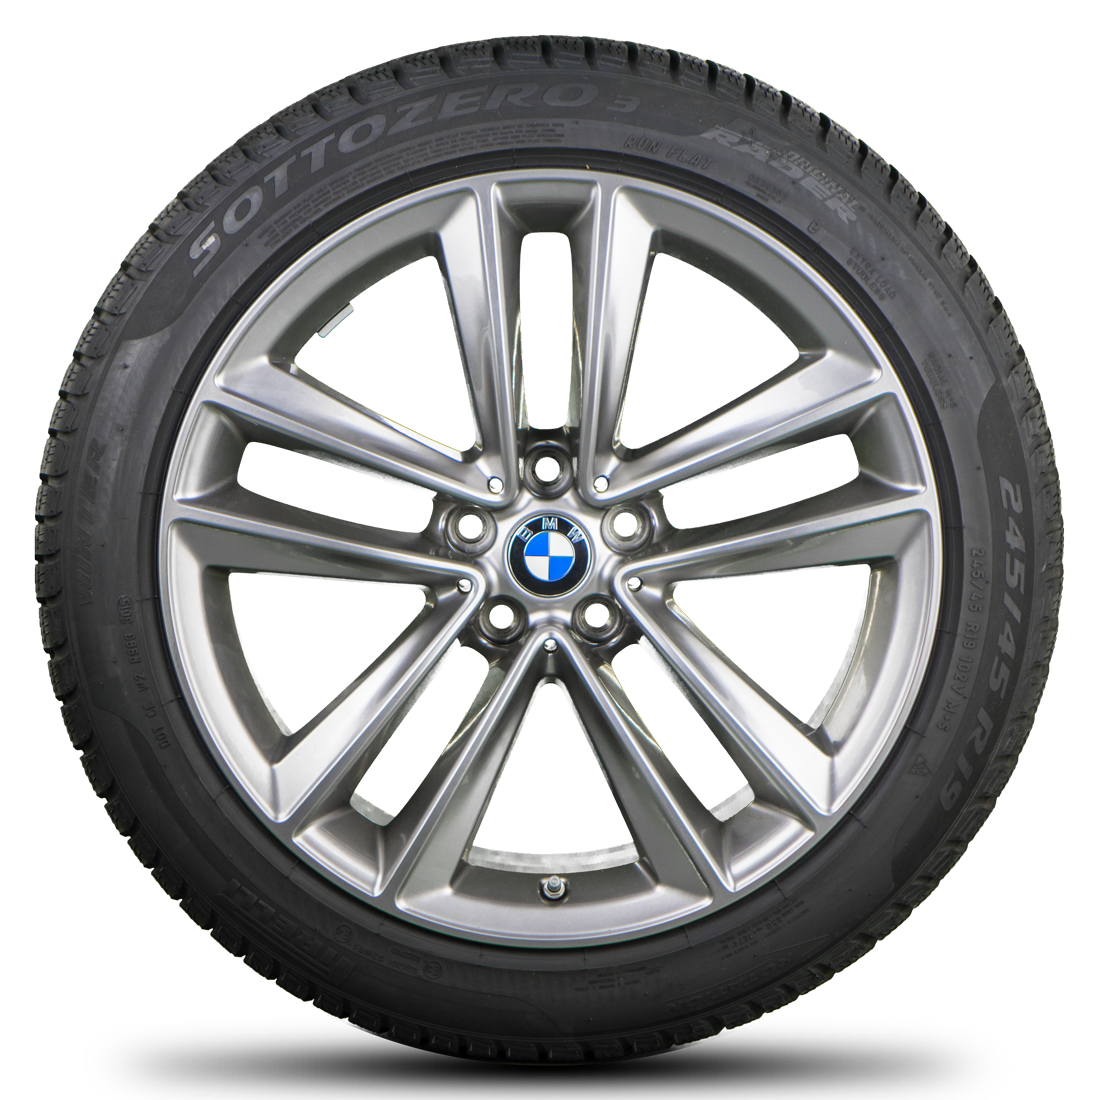 Zimní sada alu kola BMW 7 G11 STYLING 630 8,5x19 5/112 ET25 včetně zimních pneumatik 245/45 R19 102V RSC* Pirelli a čidel tlaku RDC